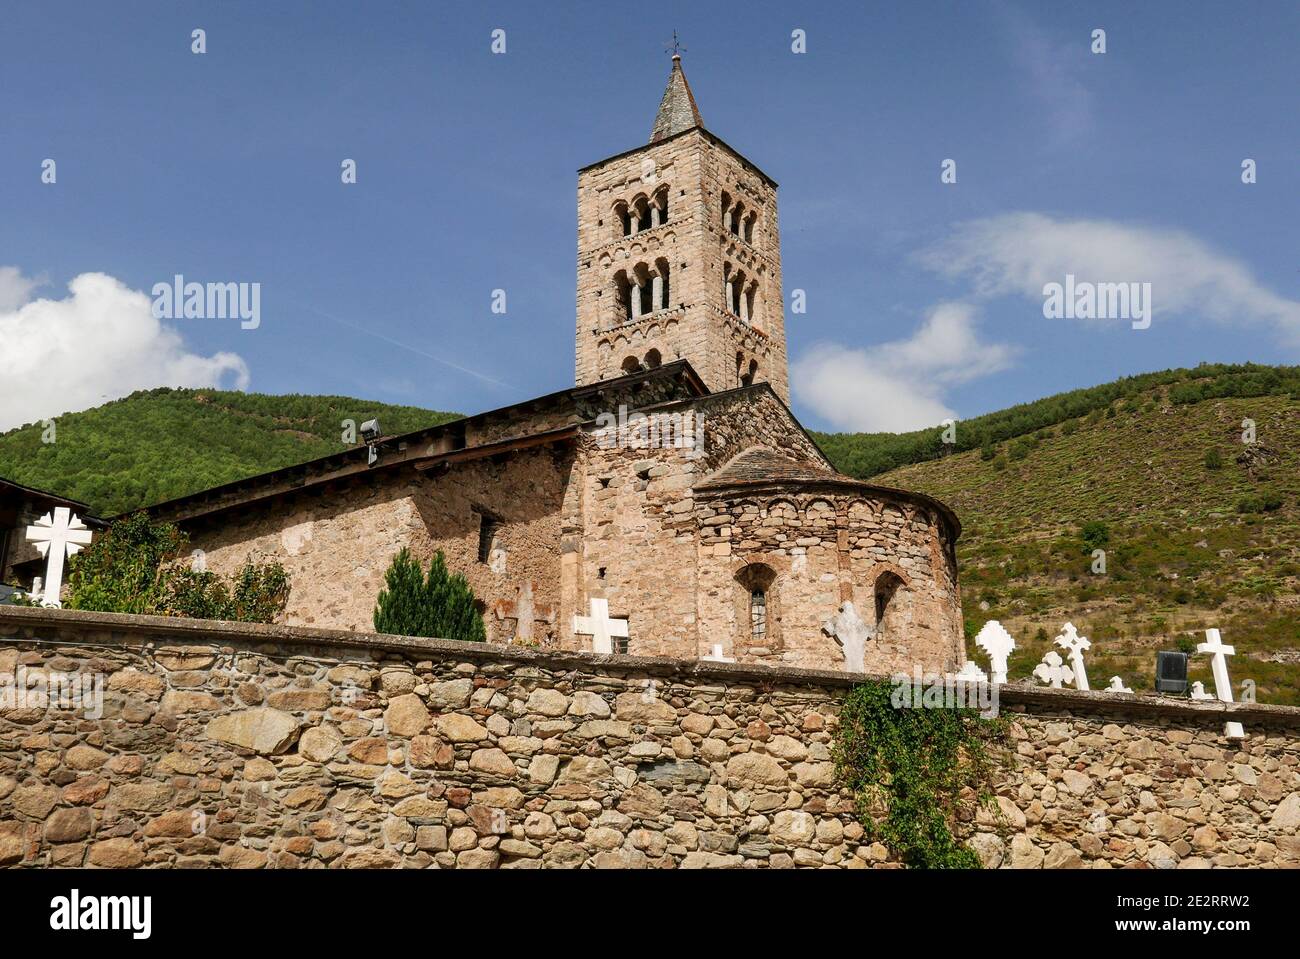 Spanien, katalanische Pyrenäen: Dorf Son in der Gemeinde Alt Àneu. Die romanische Kirche der Heiligen Justus und Pastor zwischen dem XI. Und gebaut Stockfoto